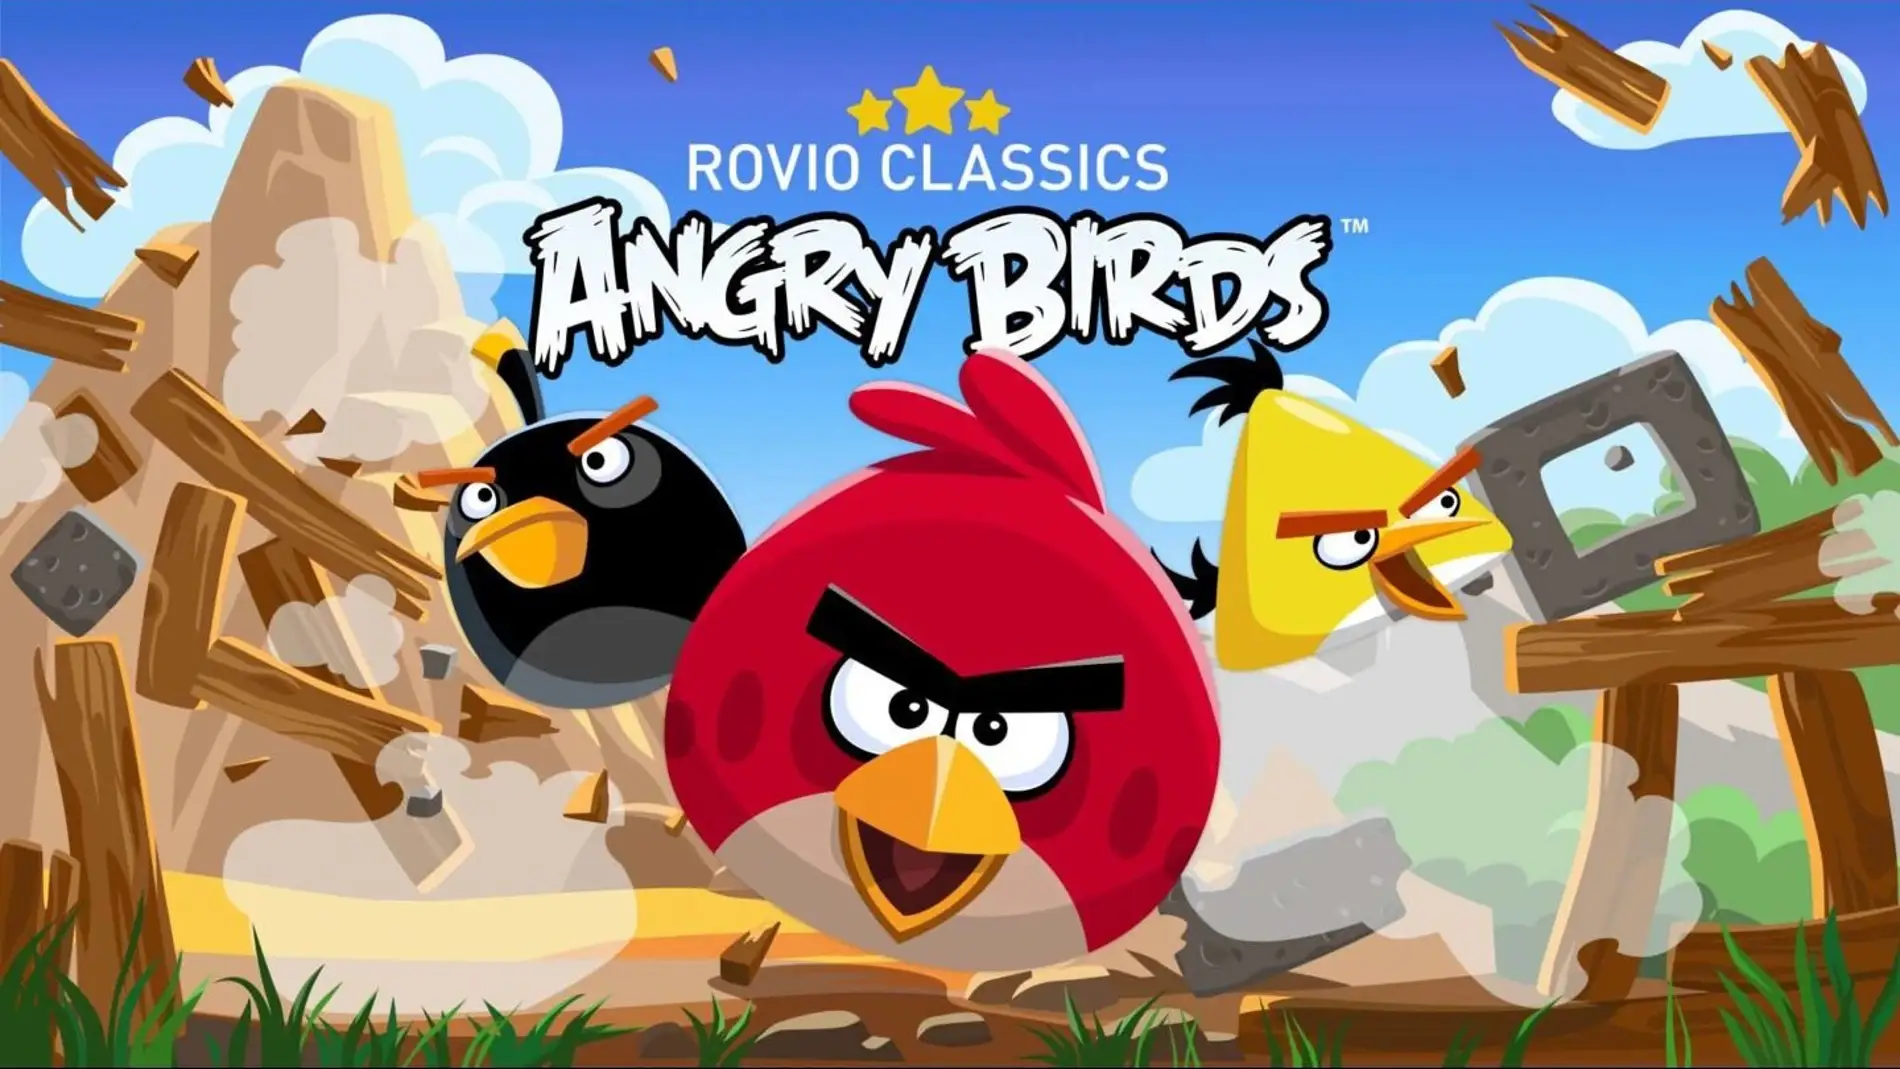 El clásico 'Angry Birds' regresa a móviles con un completo remake